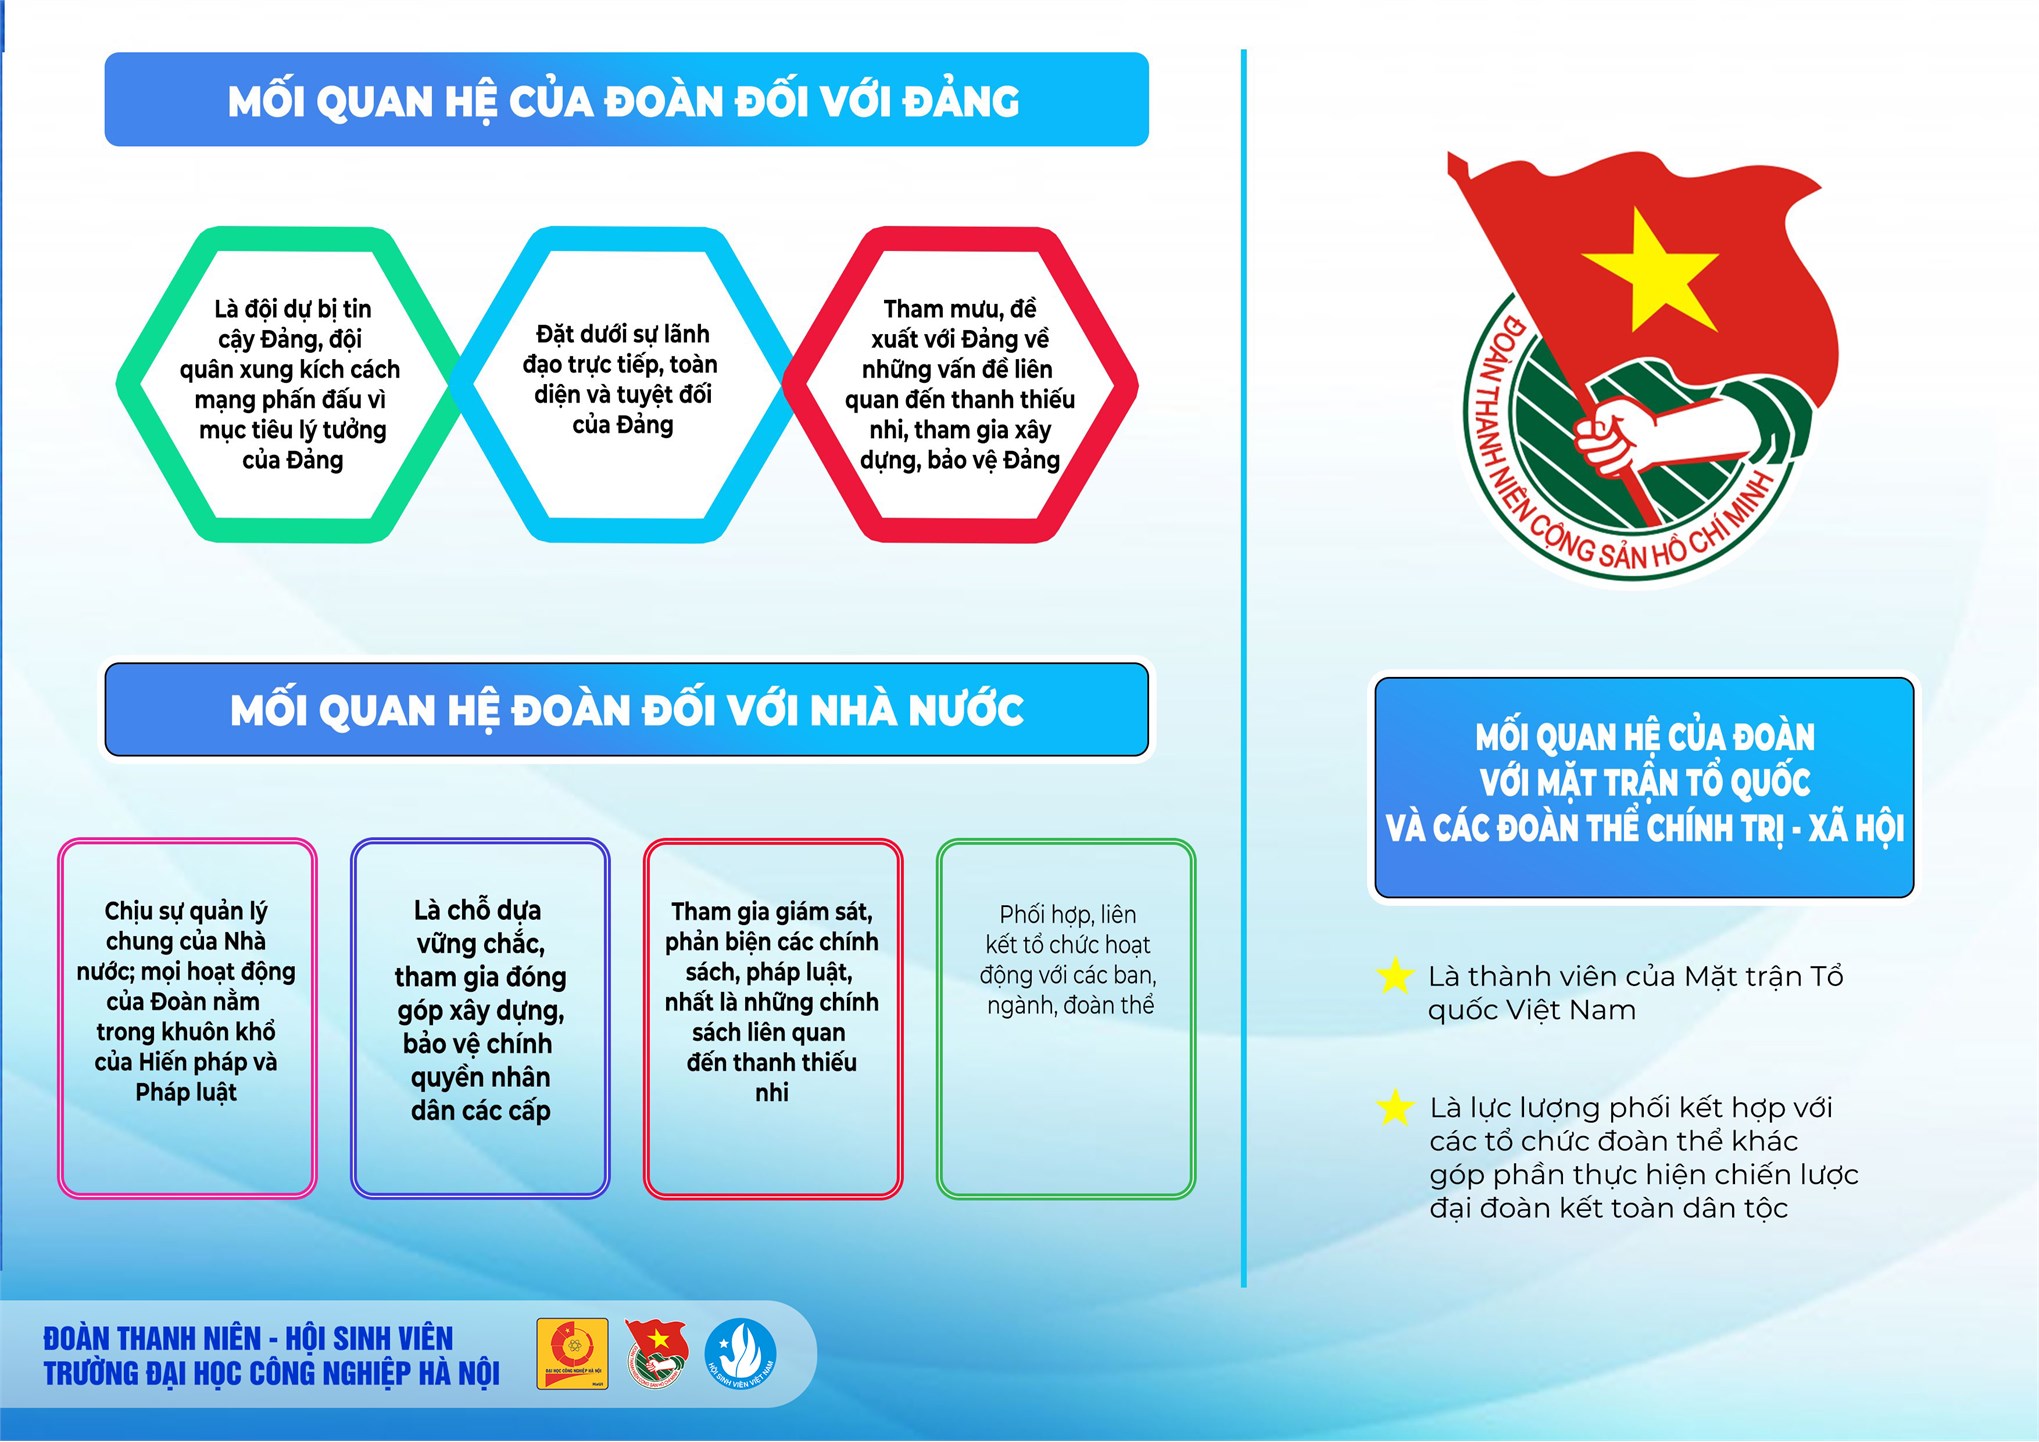 90 năm hình thành và phát triển của Đoàn TNCS Hồ Chí Minh (1931 - 2021)